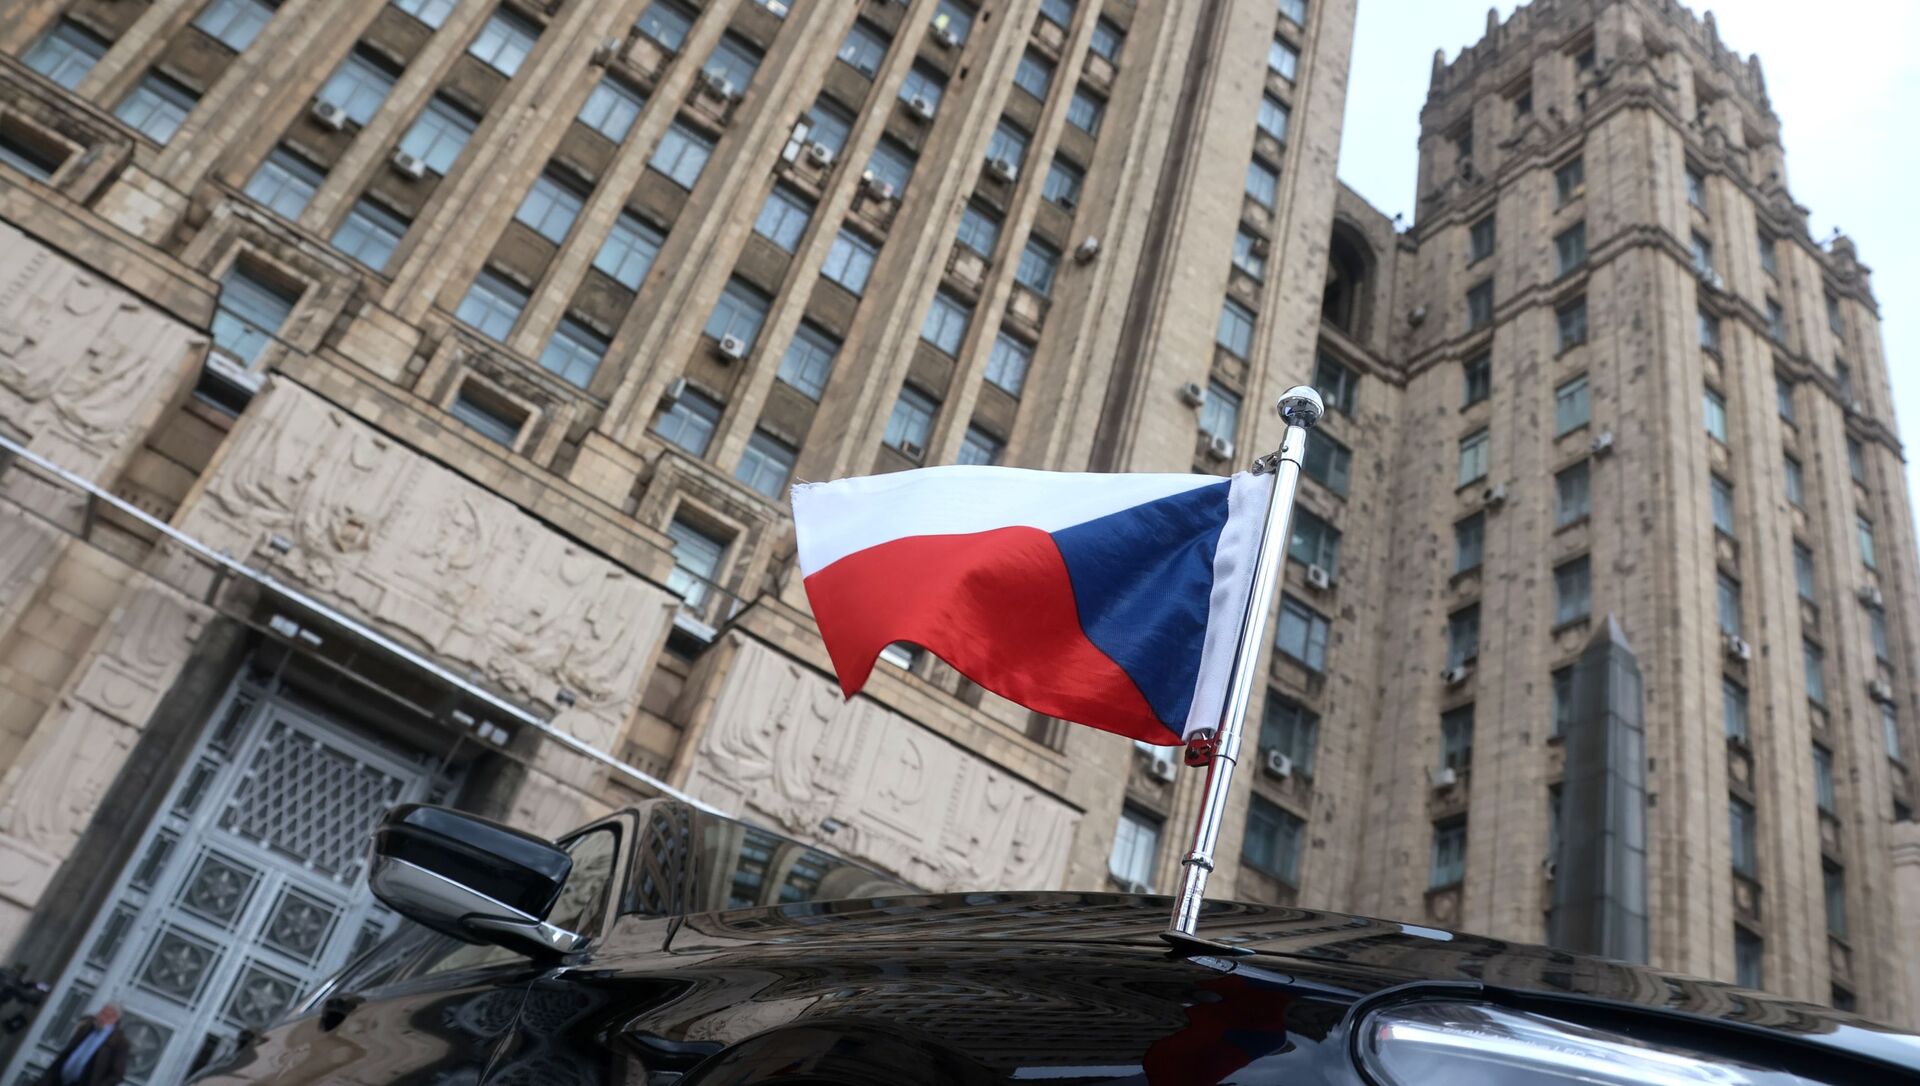 Застава на аутомобилу чешког амбасадора испред зграде Министарства спољних послова Русије у Москви - Sputnik Србија, 1920, 31.05.2021